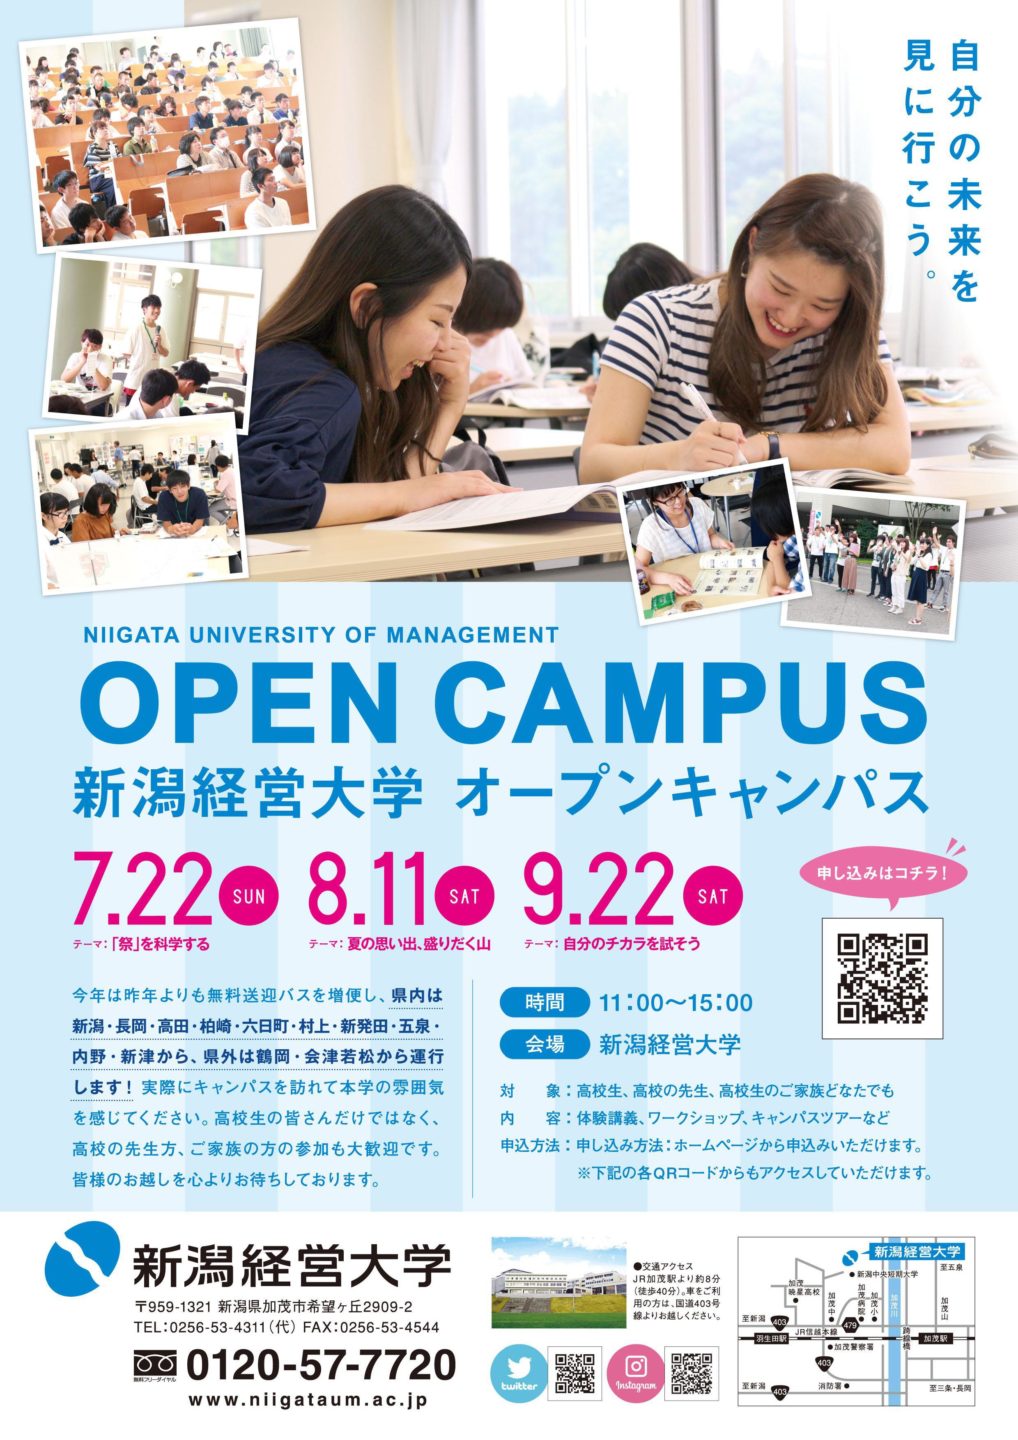 新潟経営大学様2018オープンキャンパスリーフレット